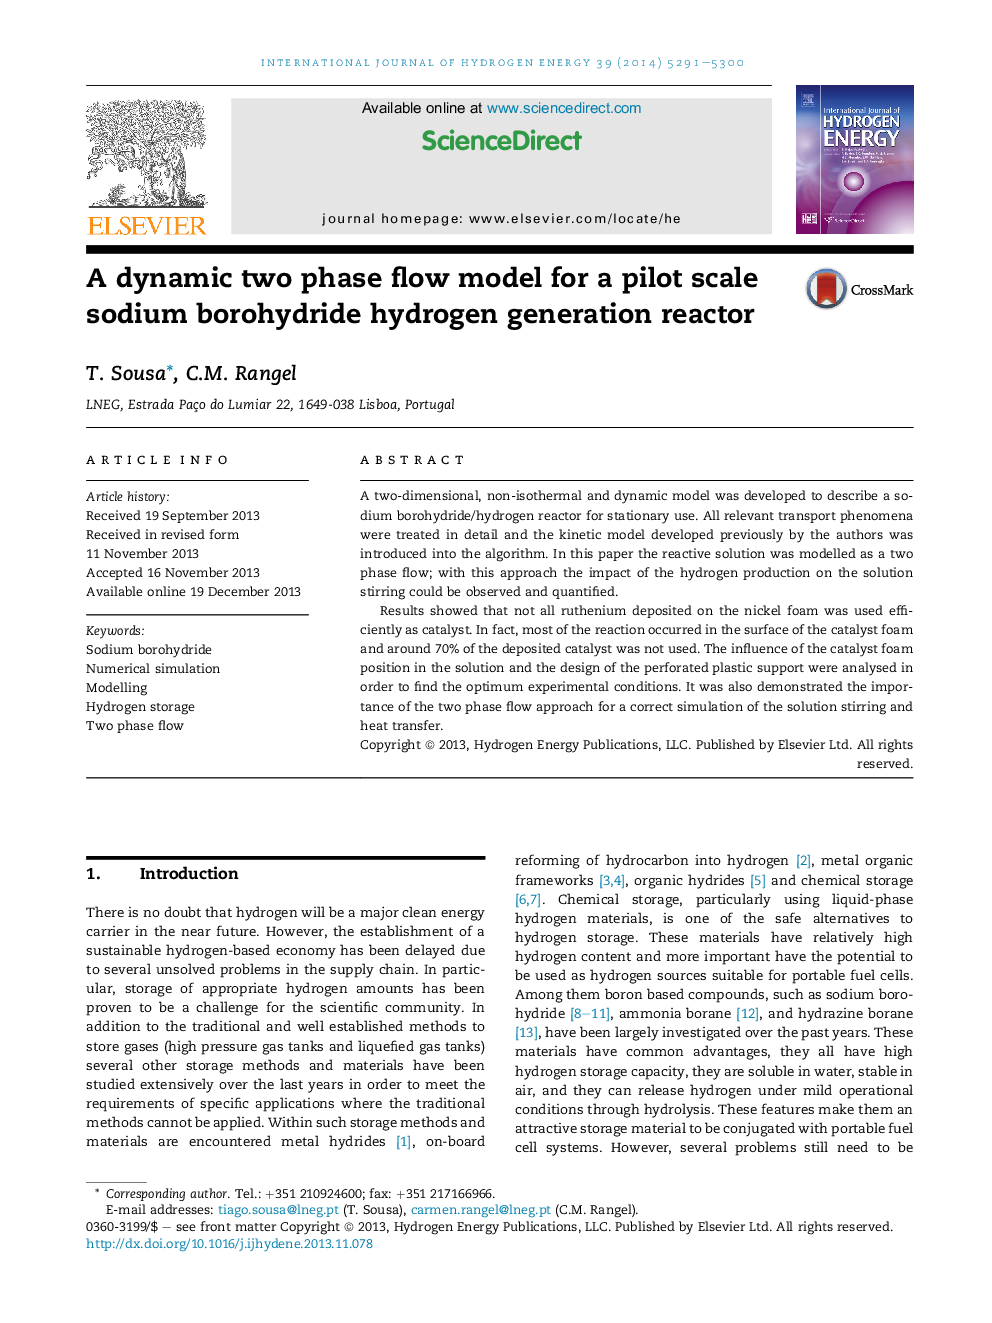 یک مدل جریان دو مرحلهای پویا برای یک رآکتور تولید هیدروژن سدیم بورو هیدرید در مقیاس آزمایشی 